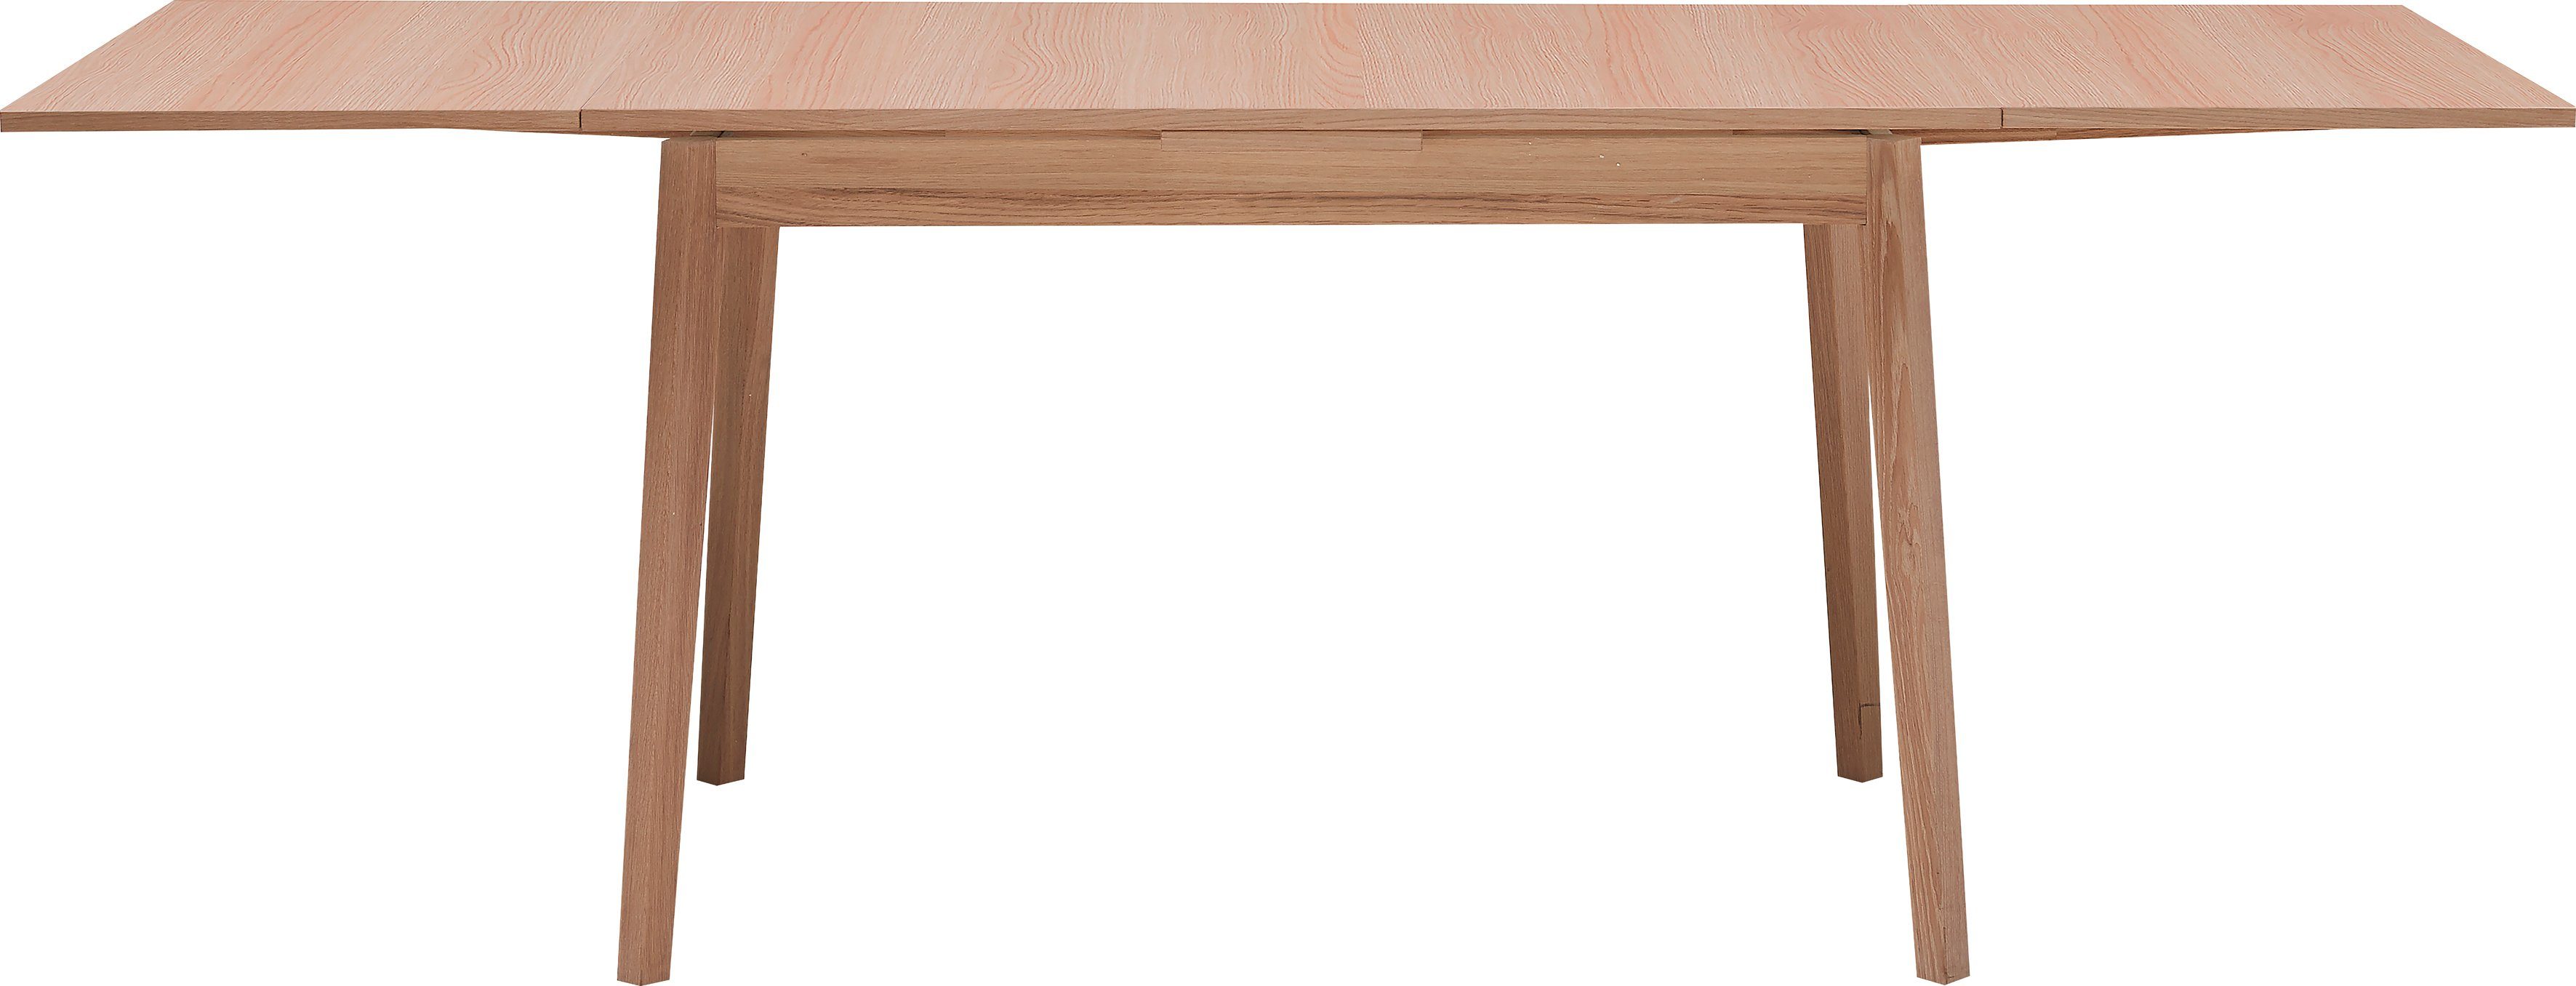 Basic Massivholz by Esstisch und Hammel Gestell in Furniture Melamin Hammel 120(220)x80 cm, Single, Tischplatte Eichefarben aus